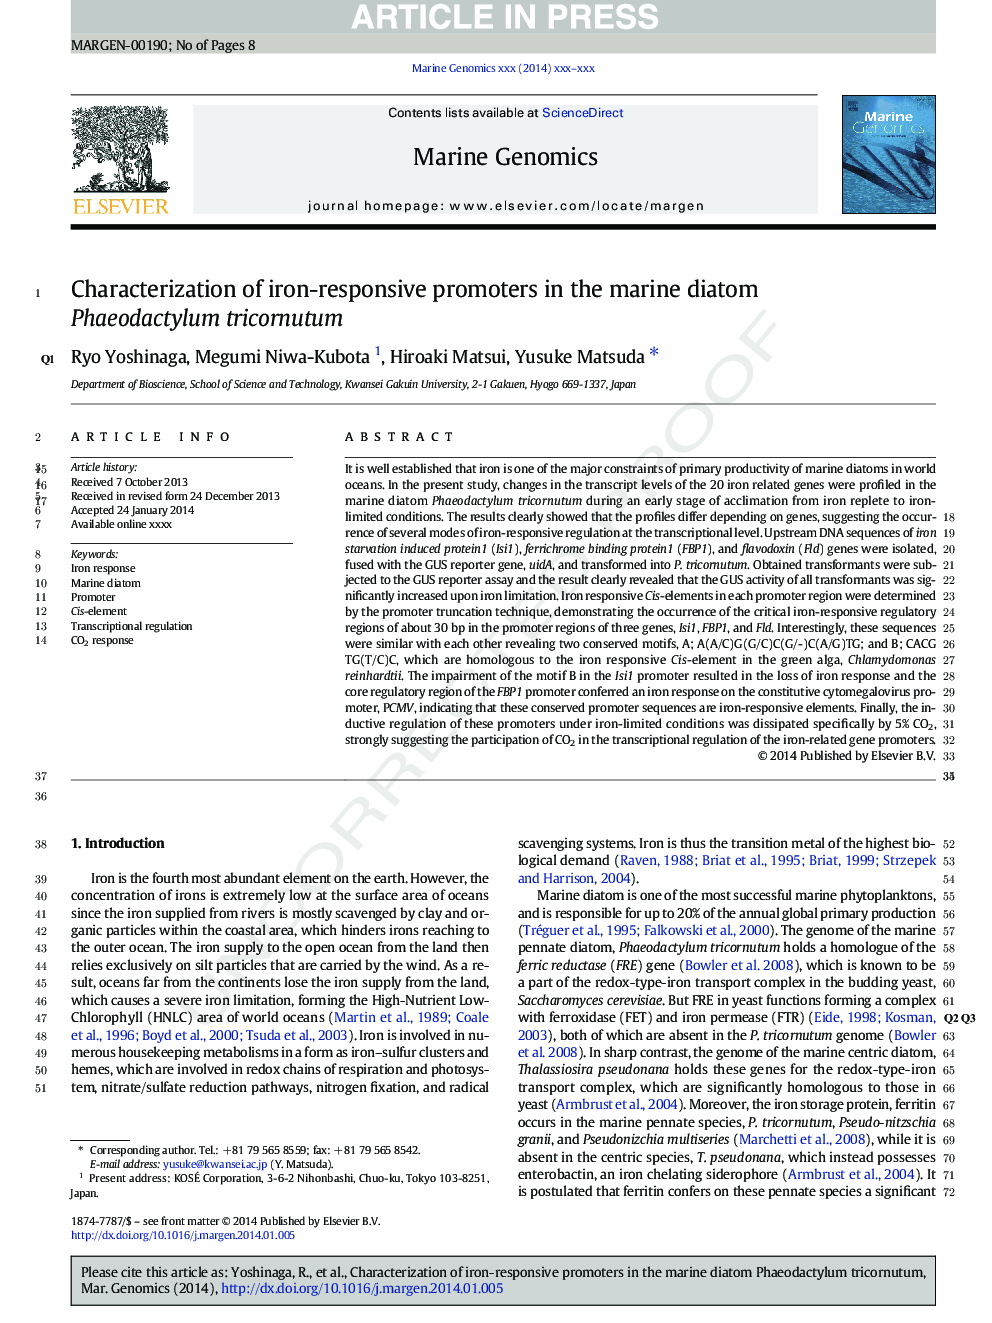 Characterization of iron-responsive promoters in the marine diatom Phaeodactylum tricornutum